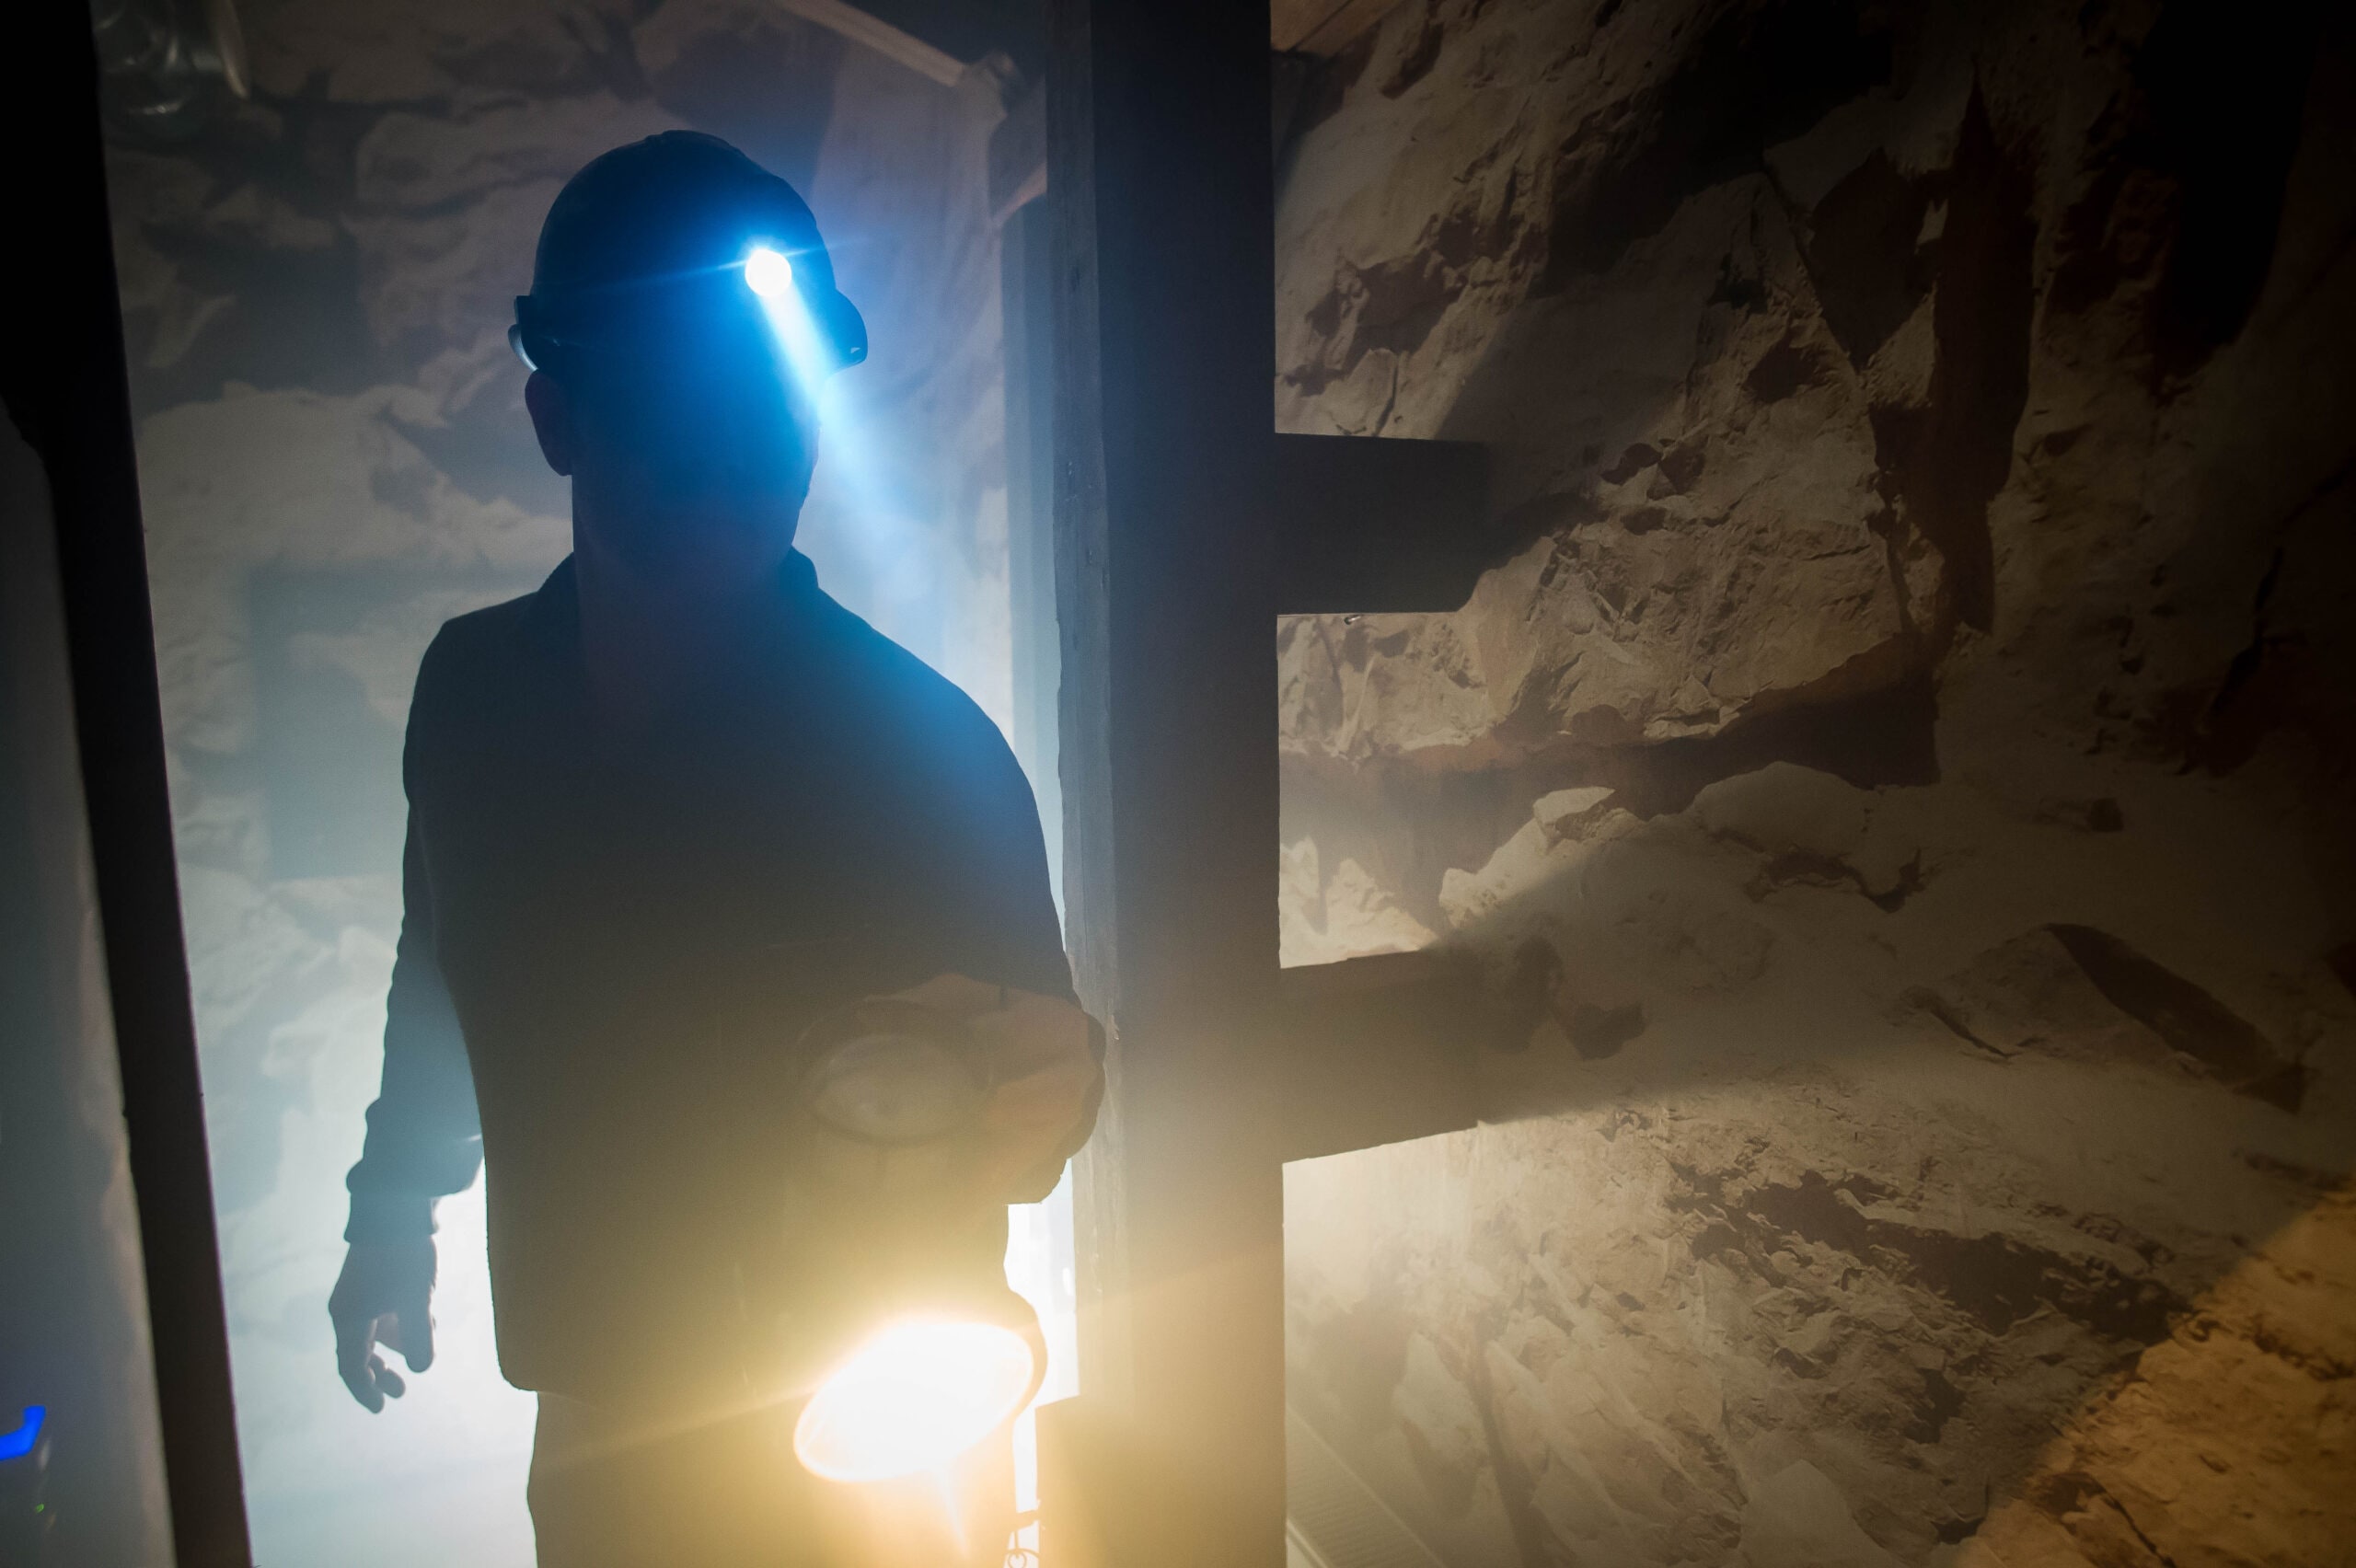 Ein Mann in Arbeitskleidung mit Helm und Stirnlampe steht in einem staubigen, undeutlich beleuchteten Raum, umgeben von unverputzten Steinwänden.